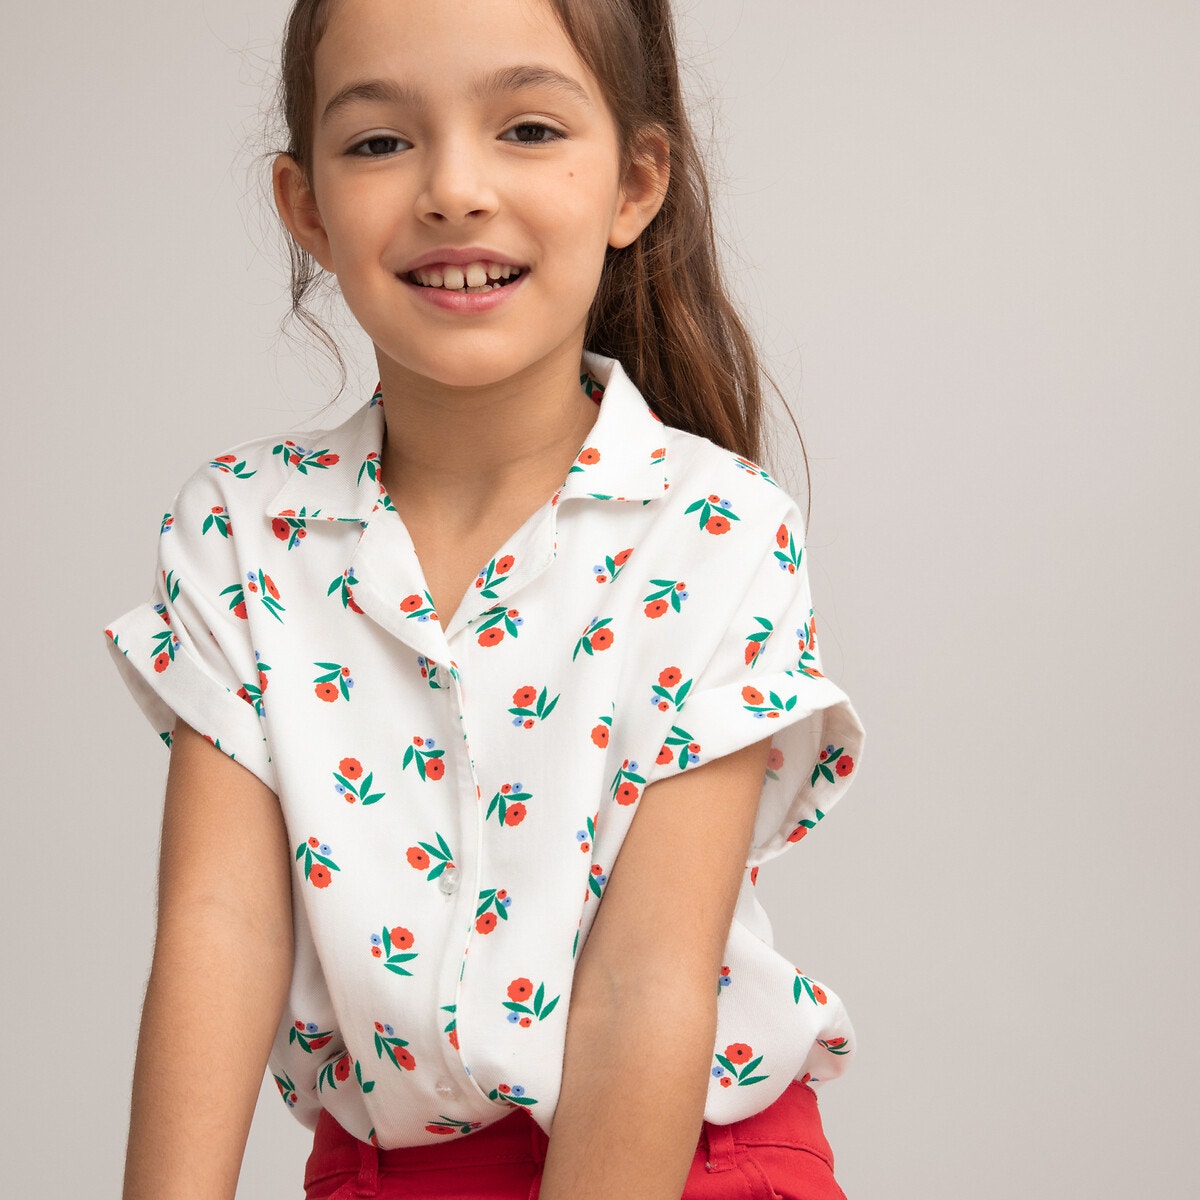 Μόδα > Παιδικά > Κορίτσι > Μπλούζες, πουκάμισα Κοντομάνικη μπλούζα με φλοράλ μοτίβο